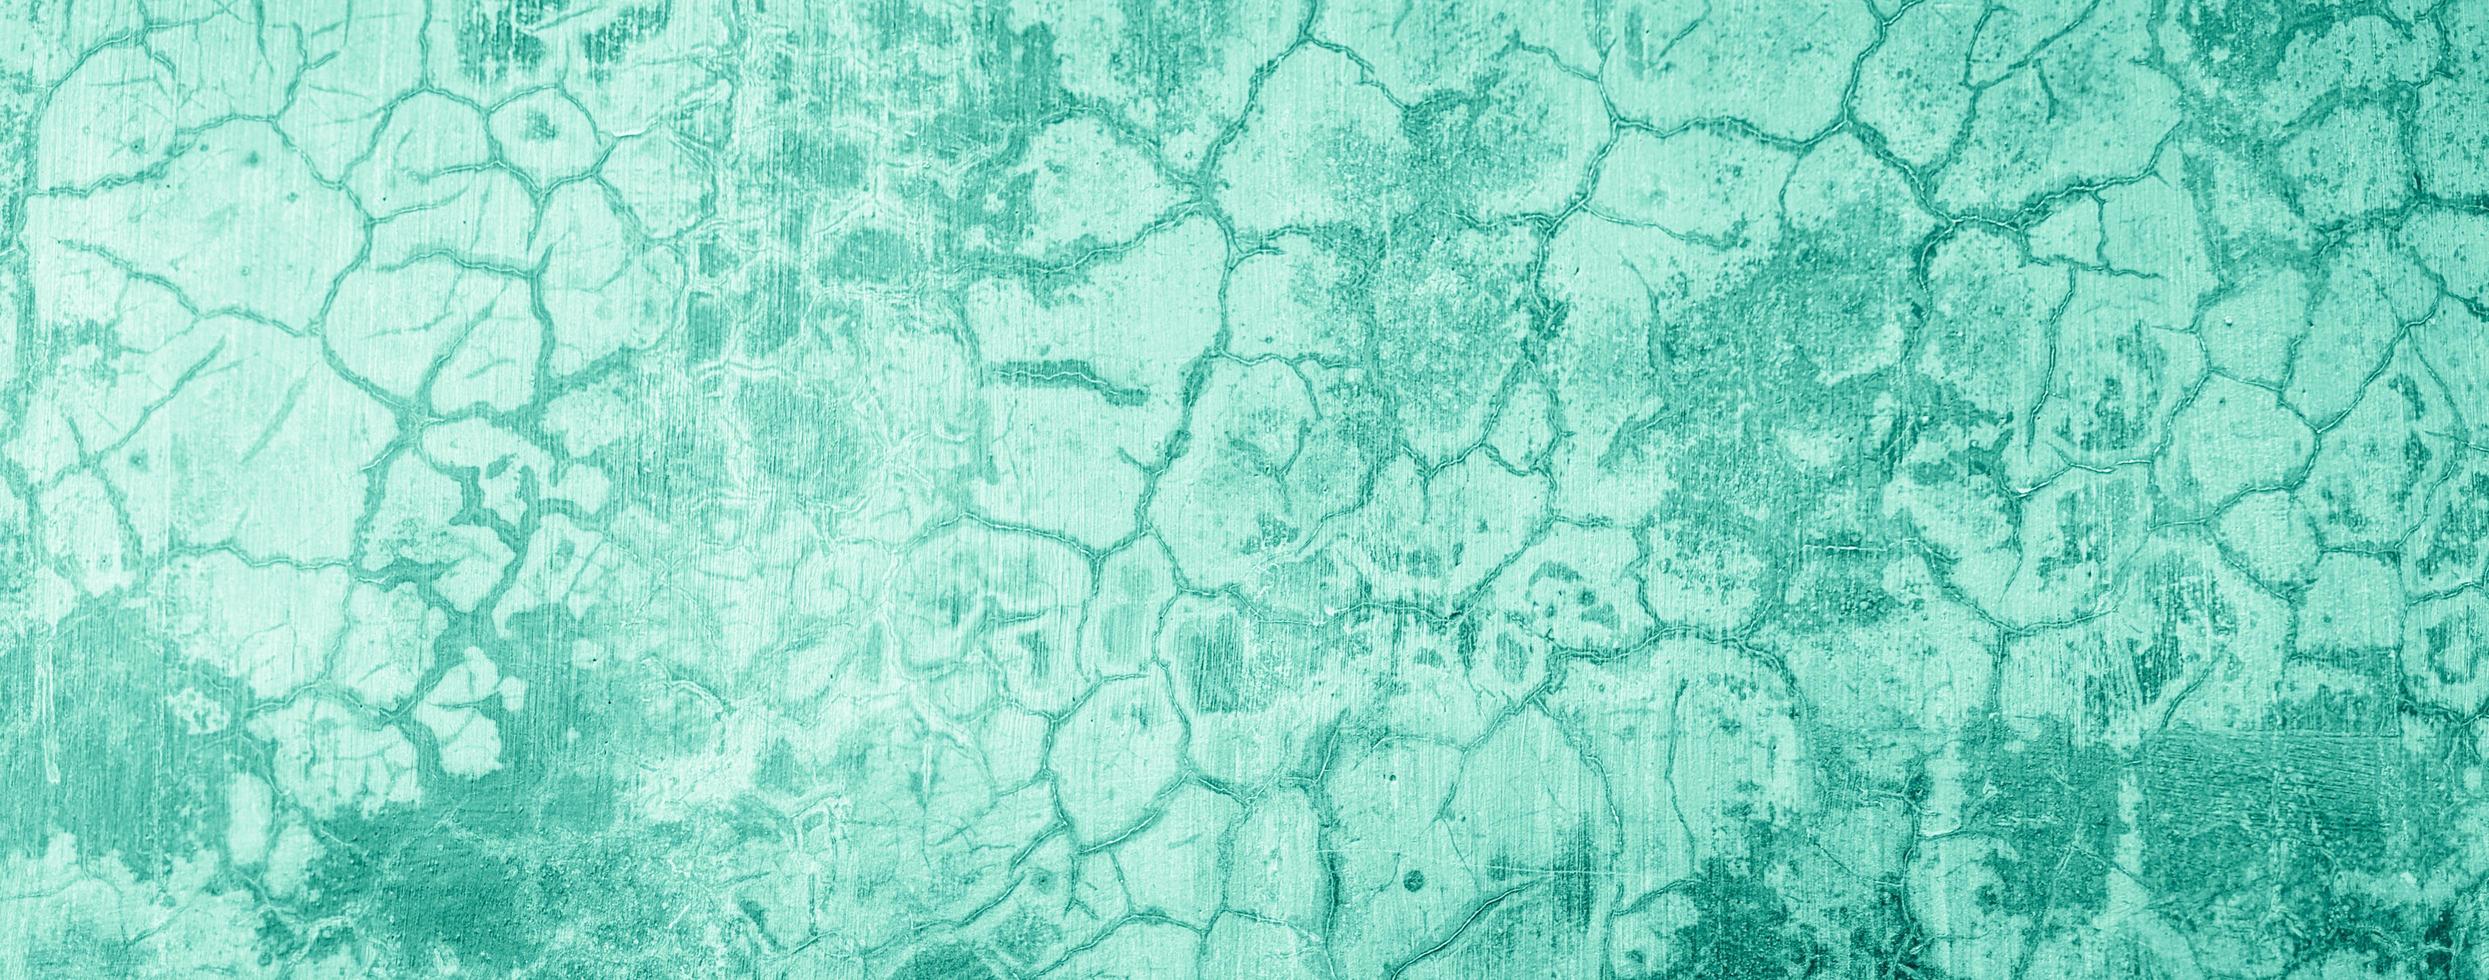 mur de béton de ciment abstrait texture fond bleu couleur pastel photo